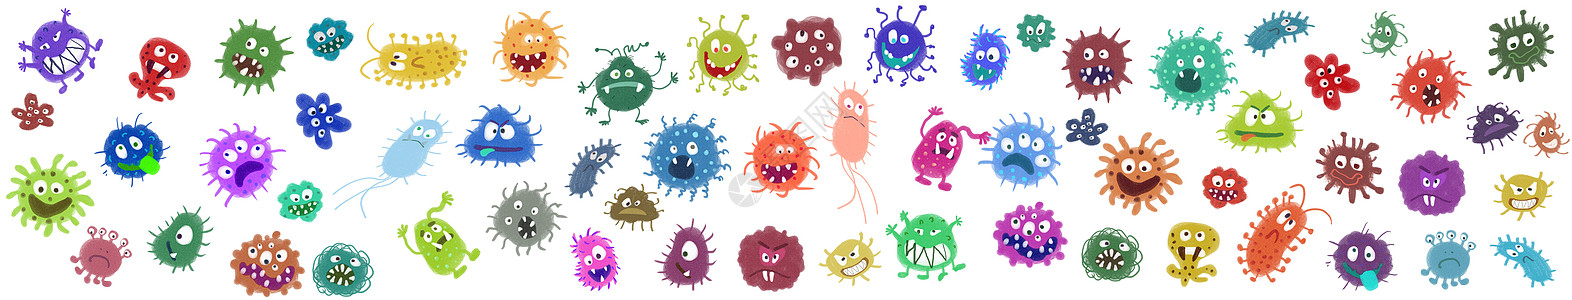 保护细胞细菌病毒元素插画